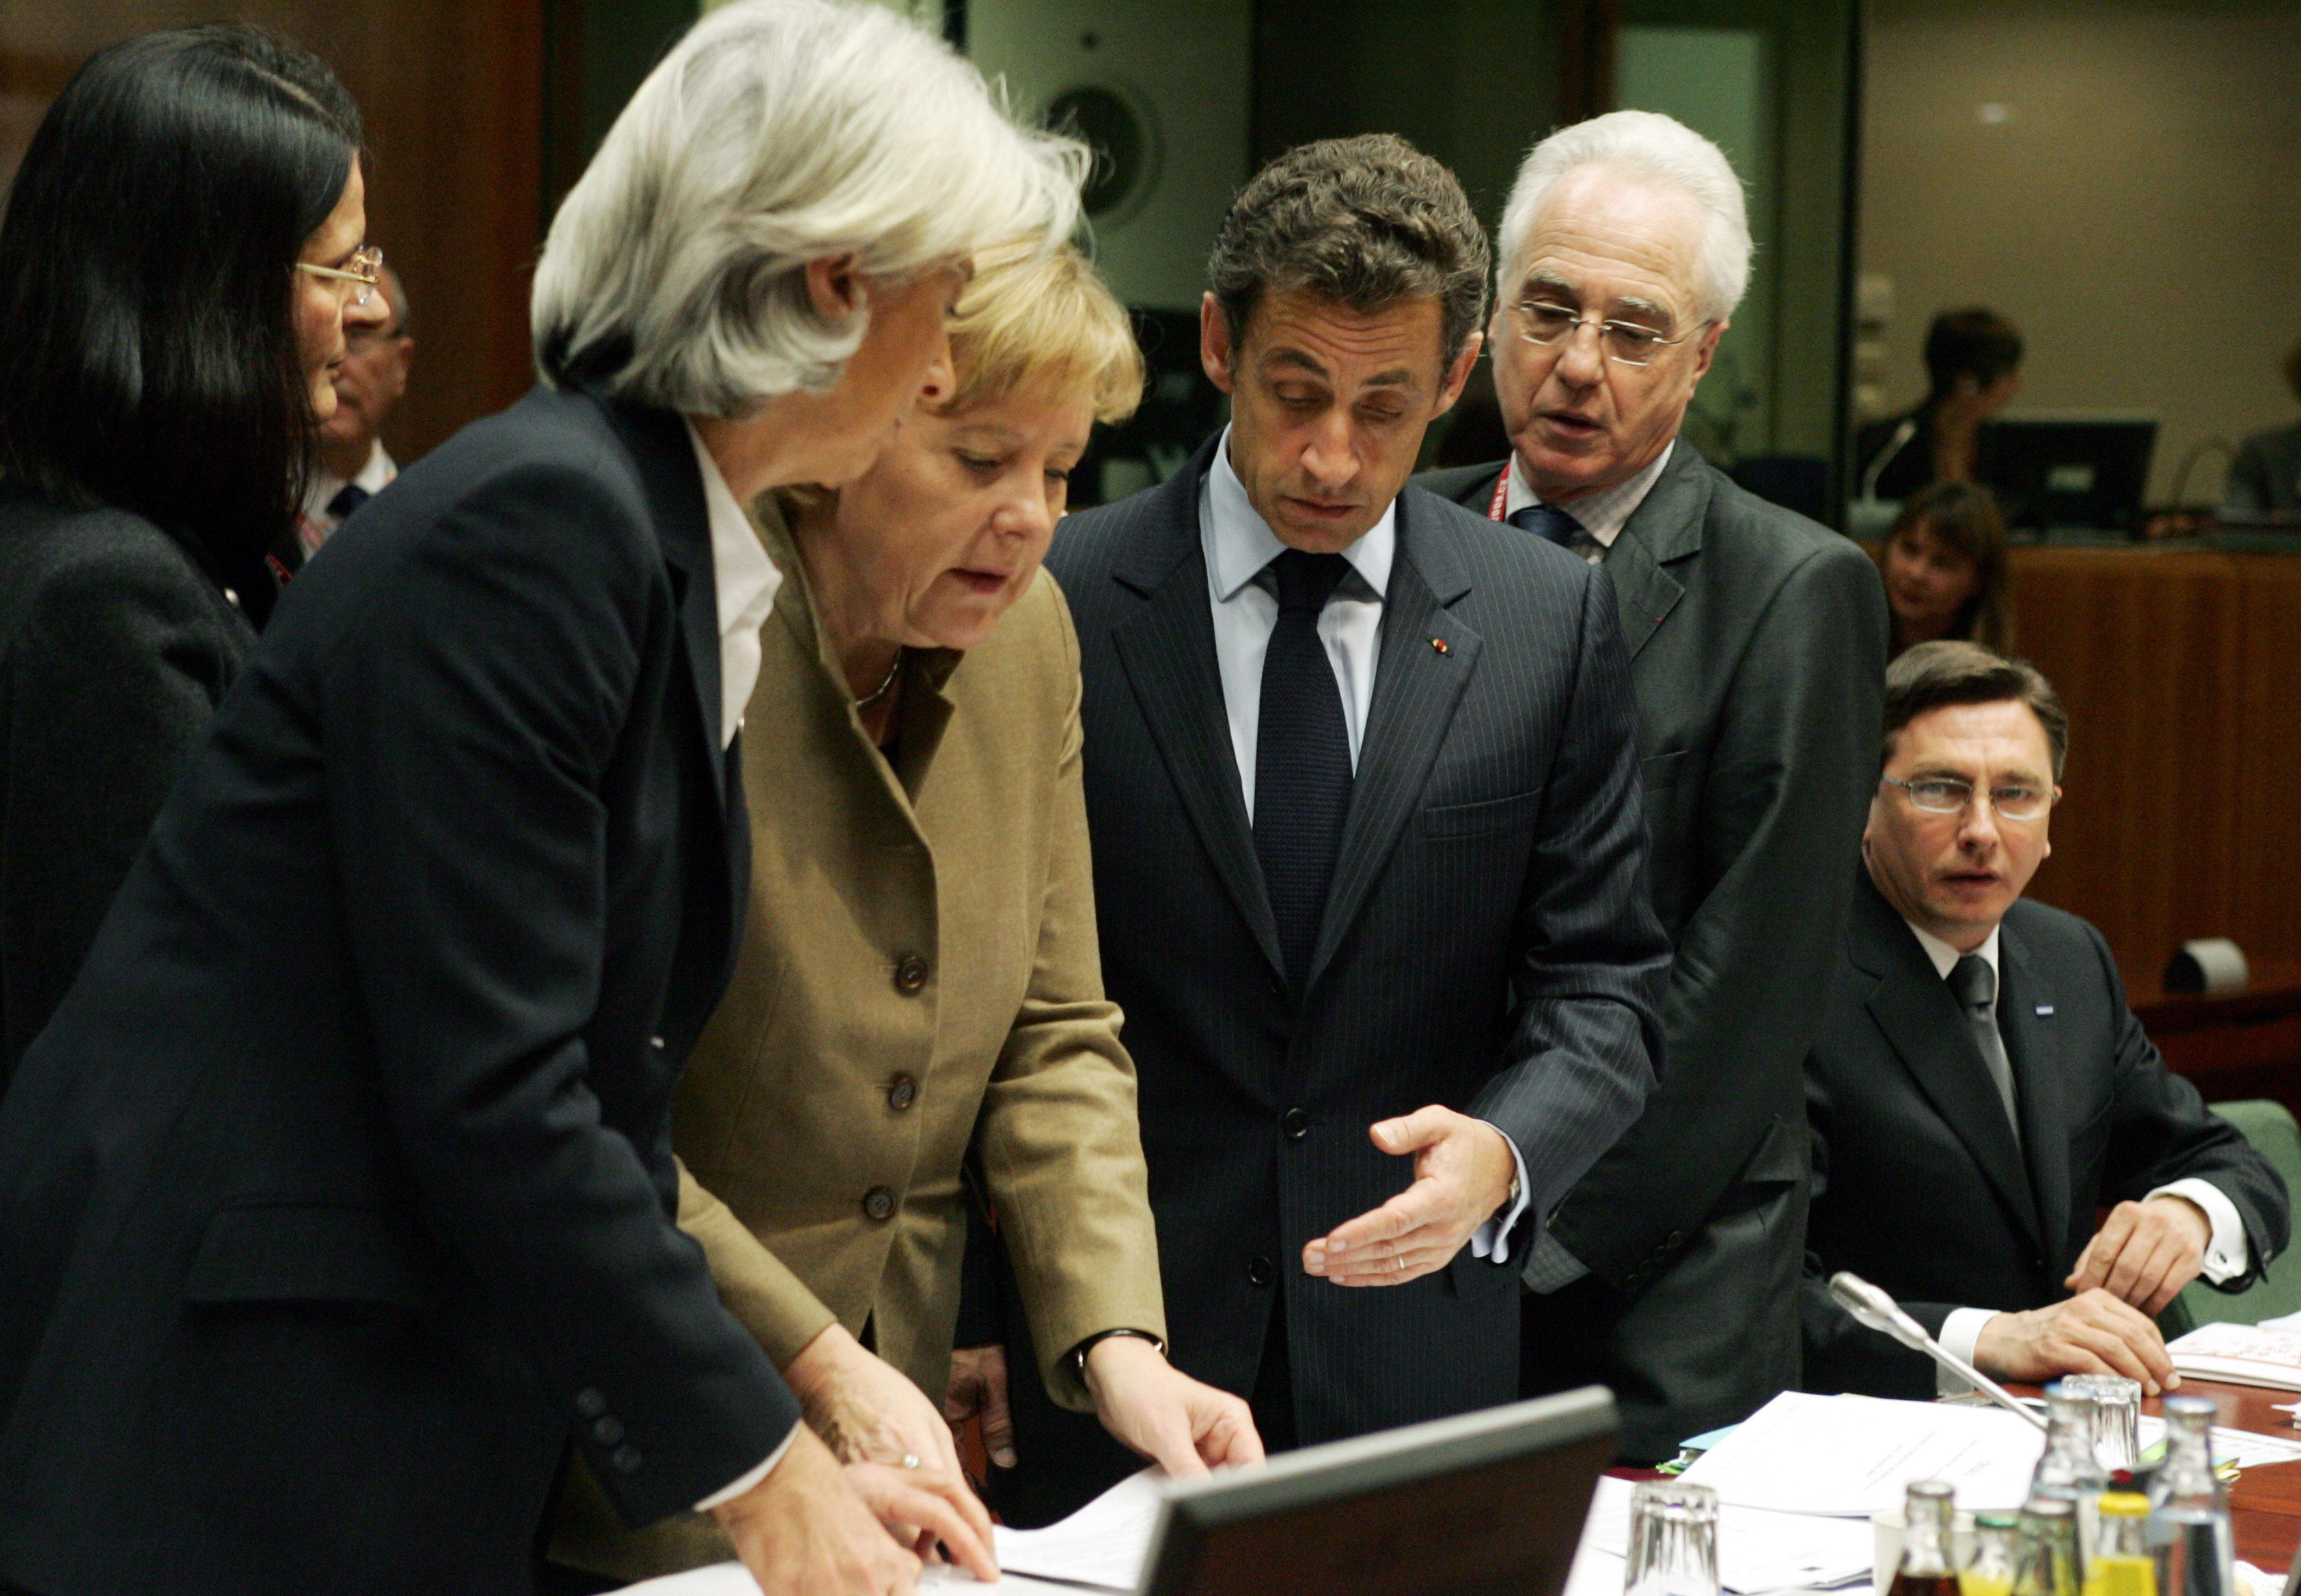 Το δημοψήφισμα τινάζει στον αέρα την 6η δόση – ΔΝΤ και Σαρκοζί έξαλλοι με τον Παπανδρέου